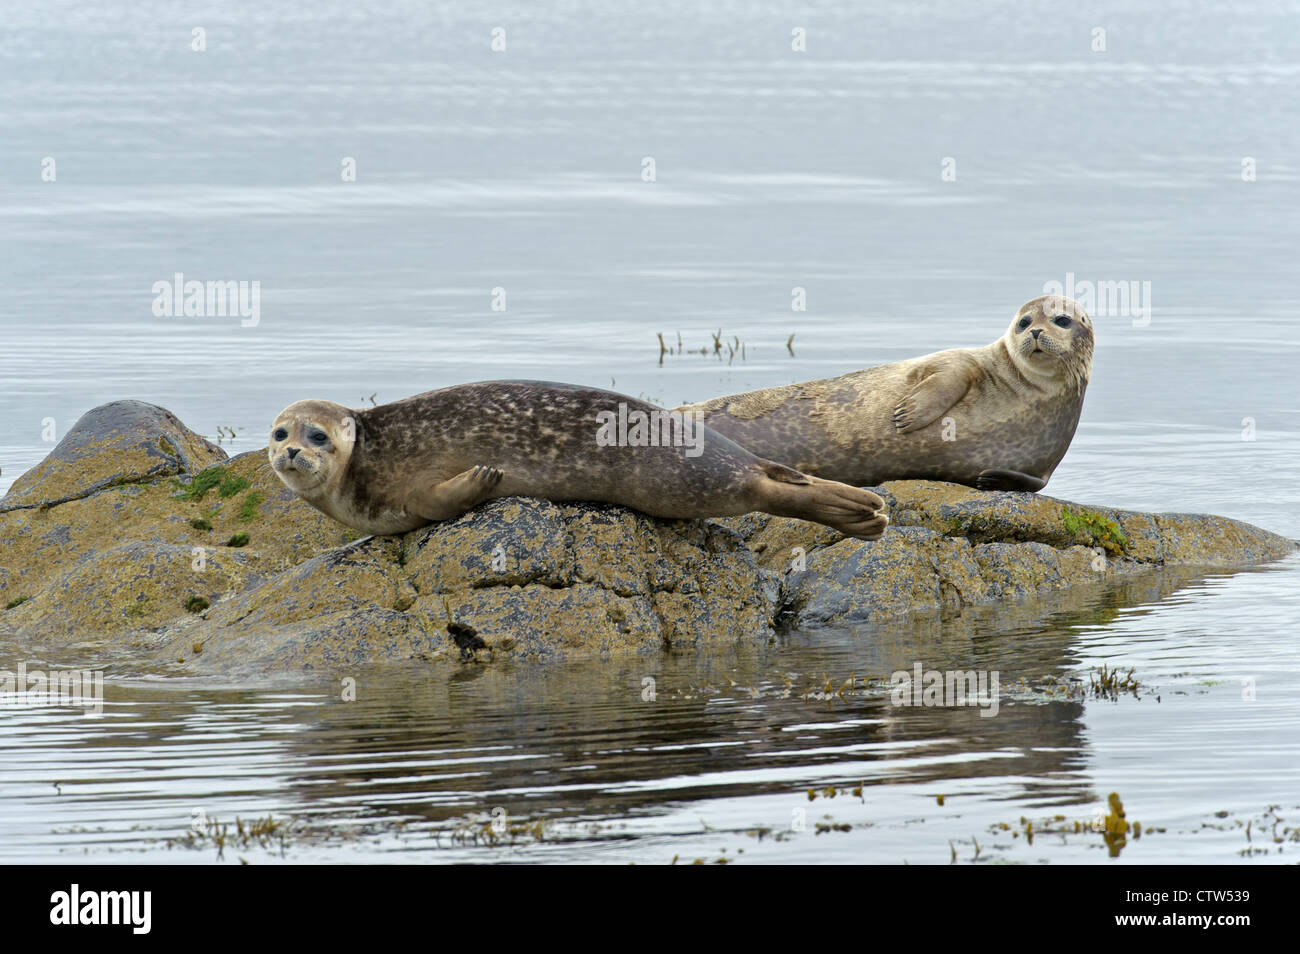 Conjoint ou le phoque commun (Phoca vitulina) sur les roches. Îles Shetland. Juin 2011. Banque D'Images